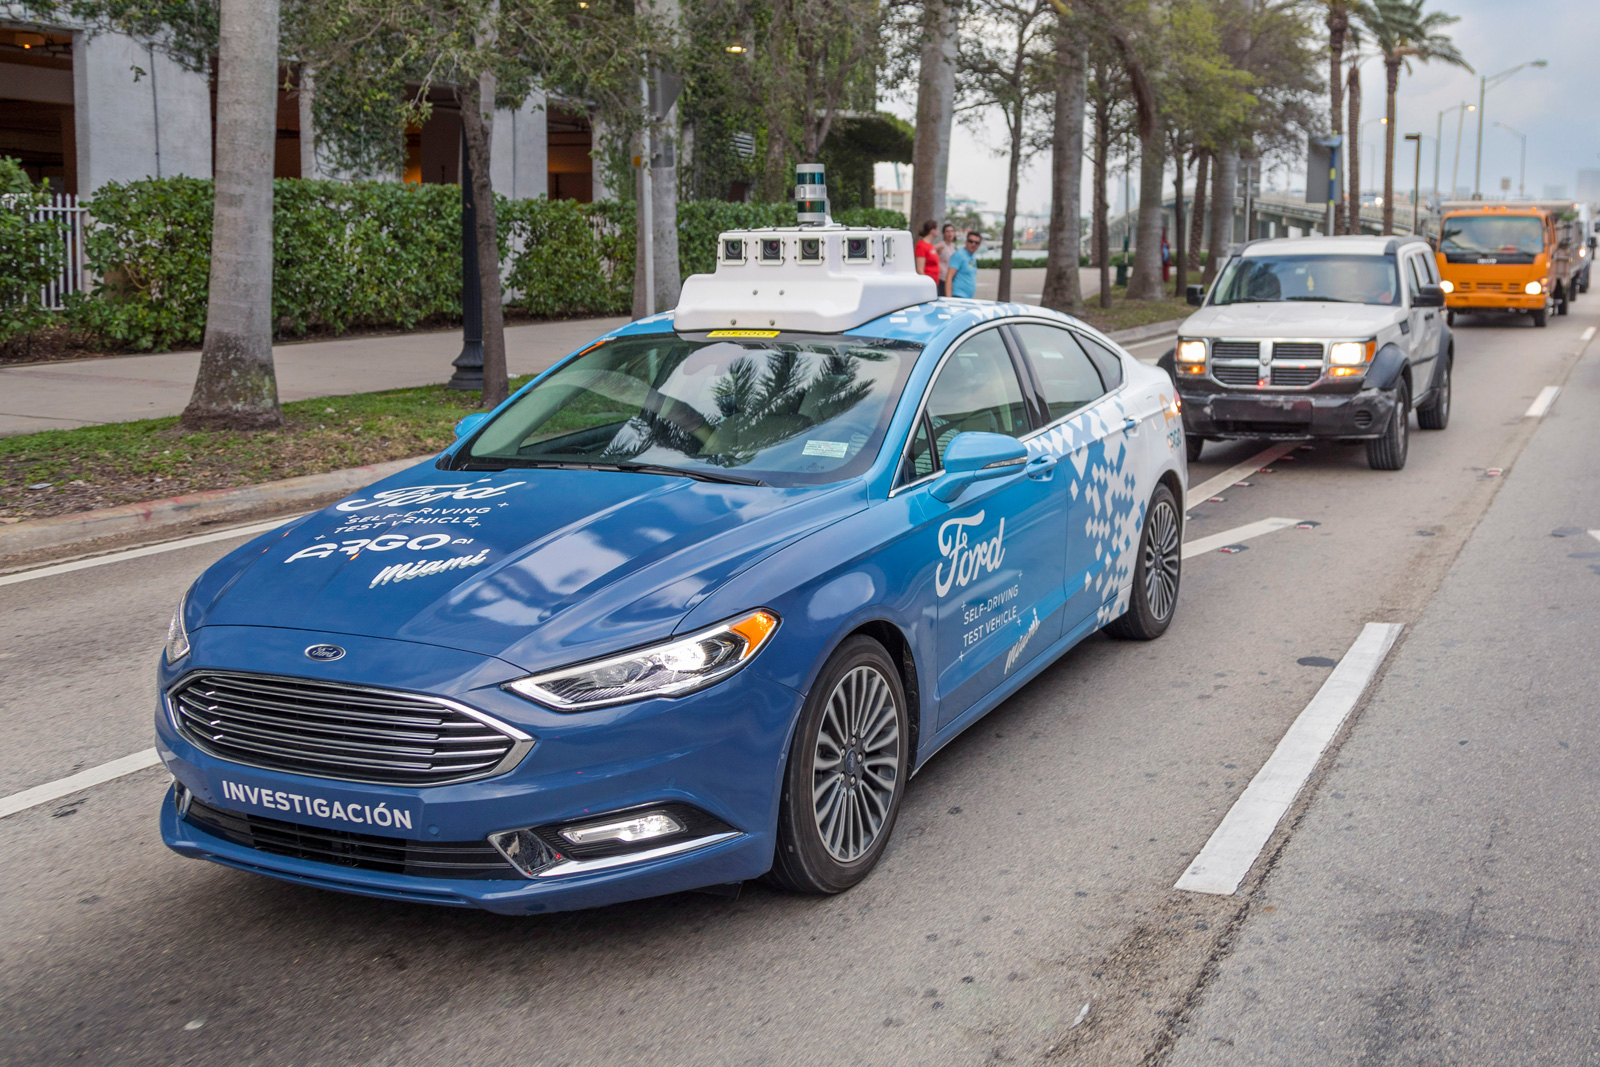 К 2021 году Ford планирует запустить собственный сервис, использующий беспилотные автомобили